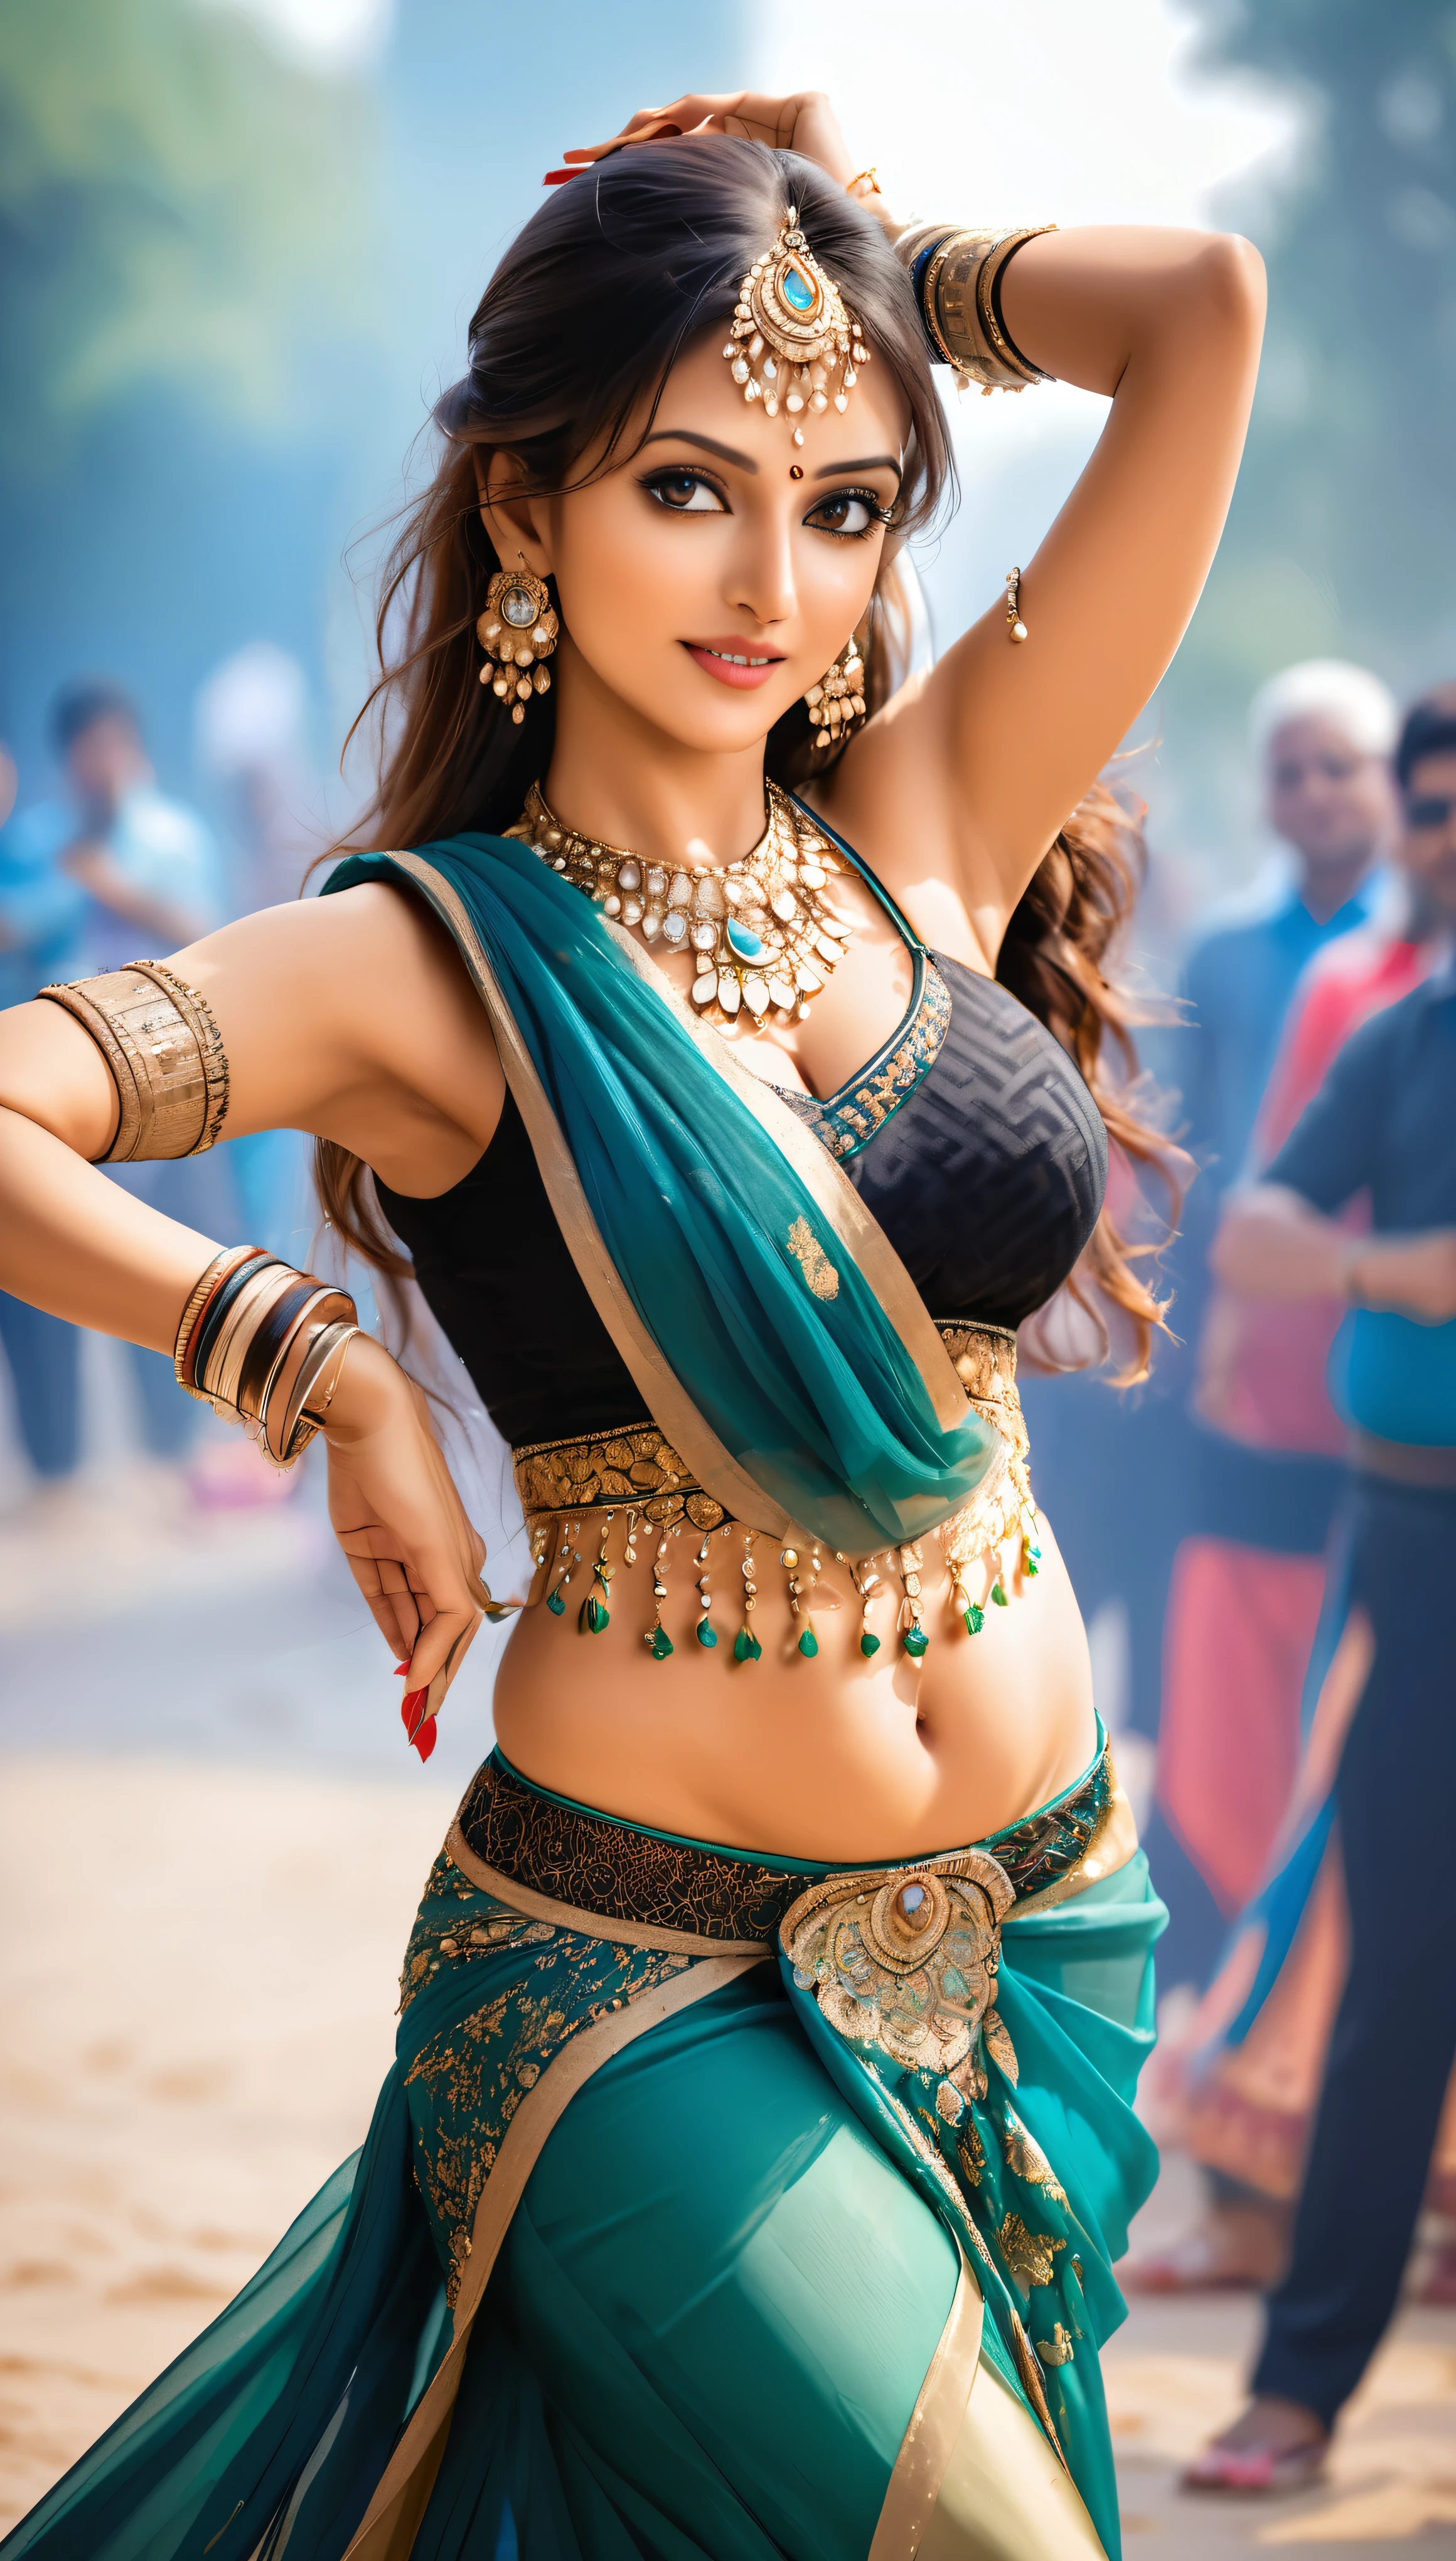 Индианка танцует танец живота, Очень привлекательная и зрелая молодая женщина, Она очаровывает публику своим соблазнительным сари.., КЛЮВ Фото, 